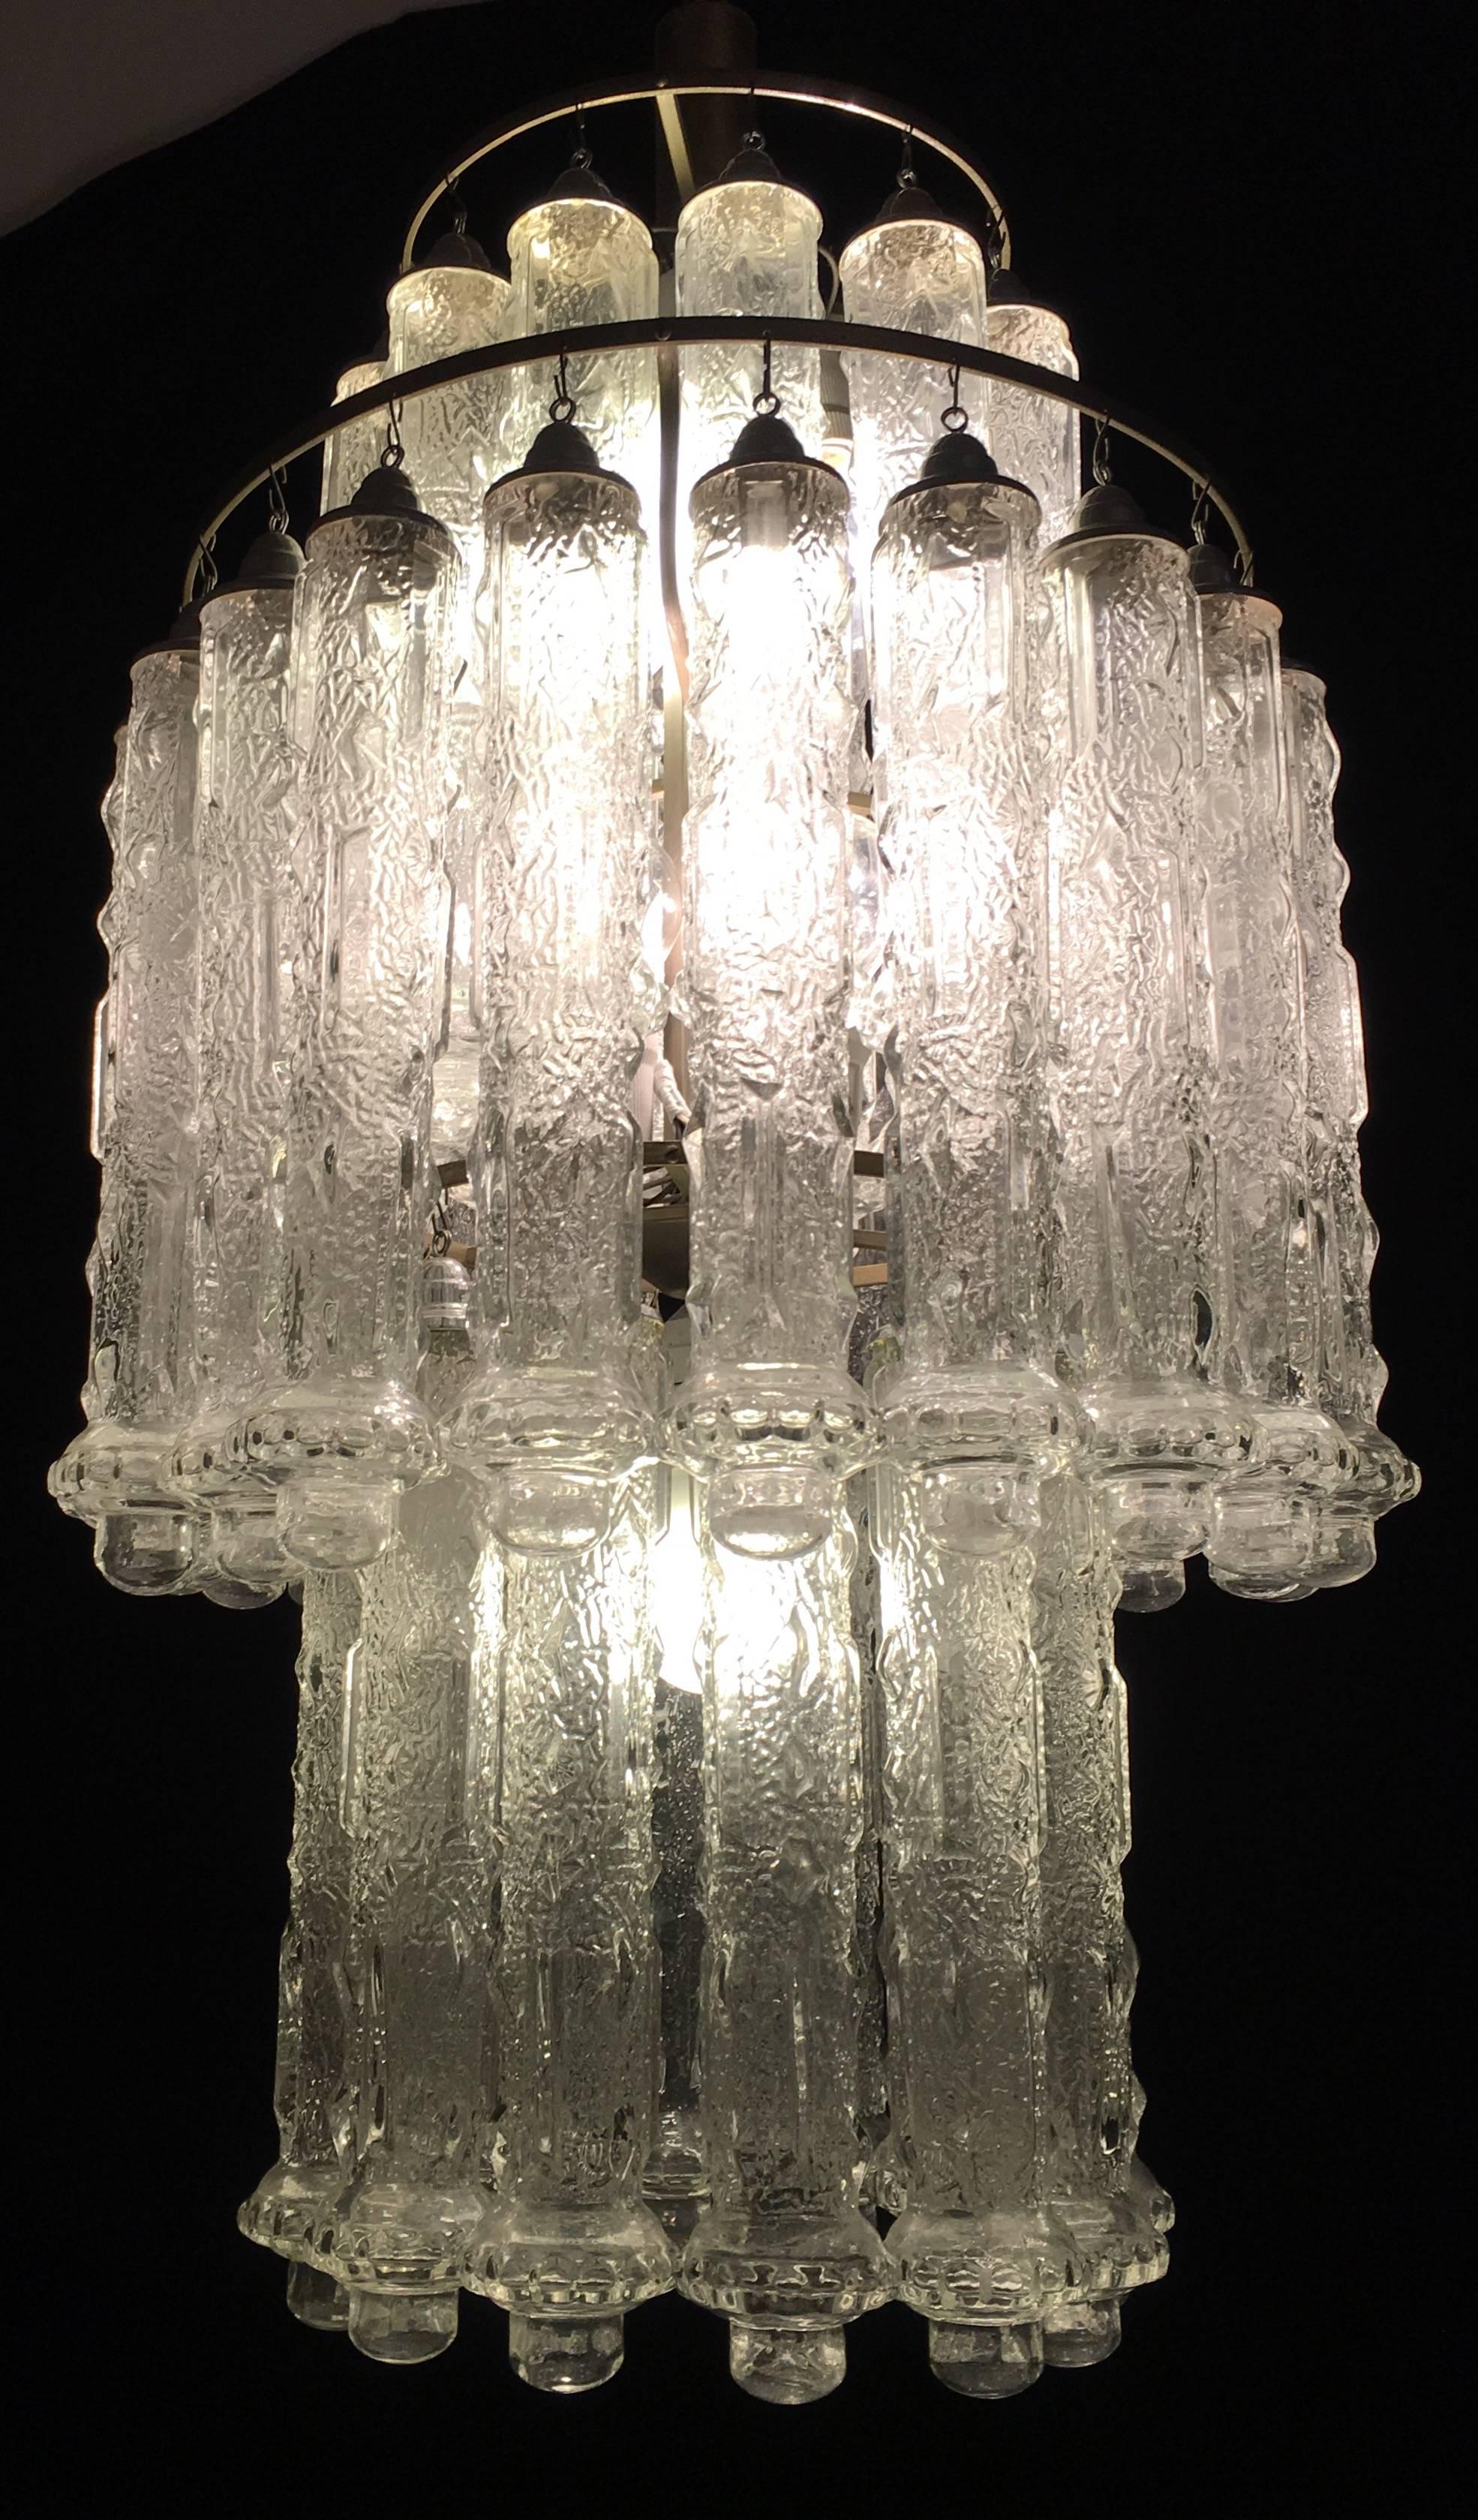 Vintage-Kronleuchter von 48 fantastischen Murano-Glas Sanduhr gemacht.

Höhe ohne Kette 100cm.